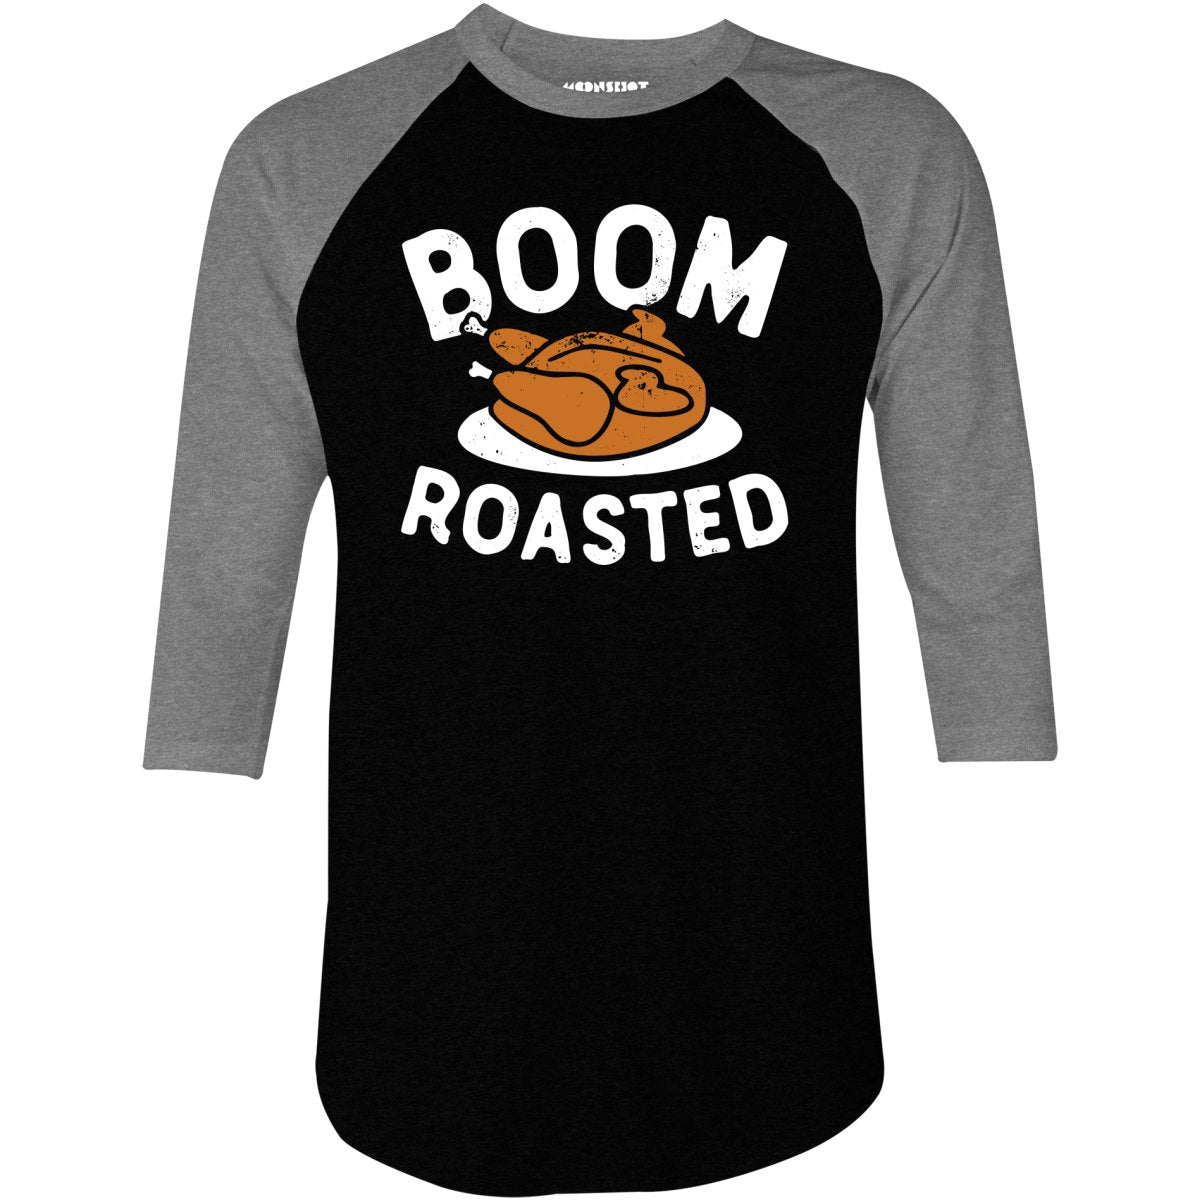 Boom Roasted - 3/4 Sleeve Raglan T-Shirt